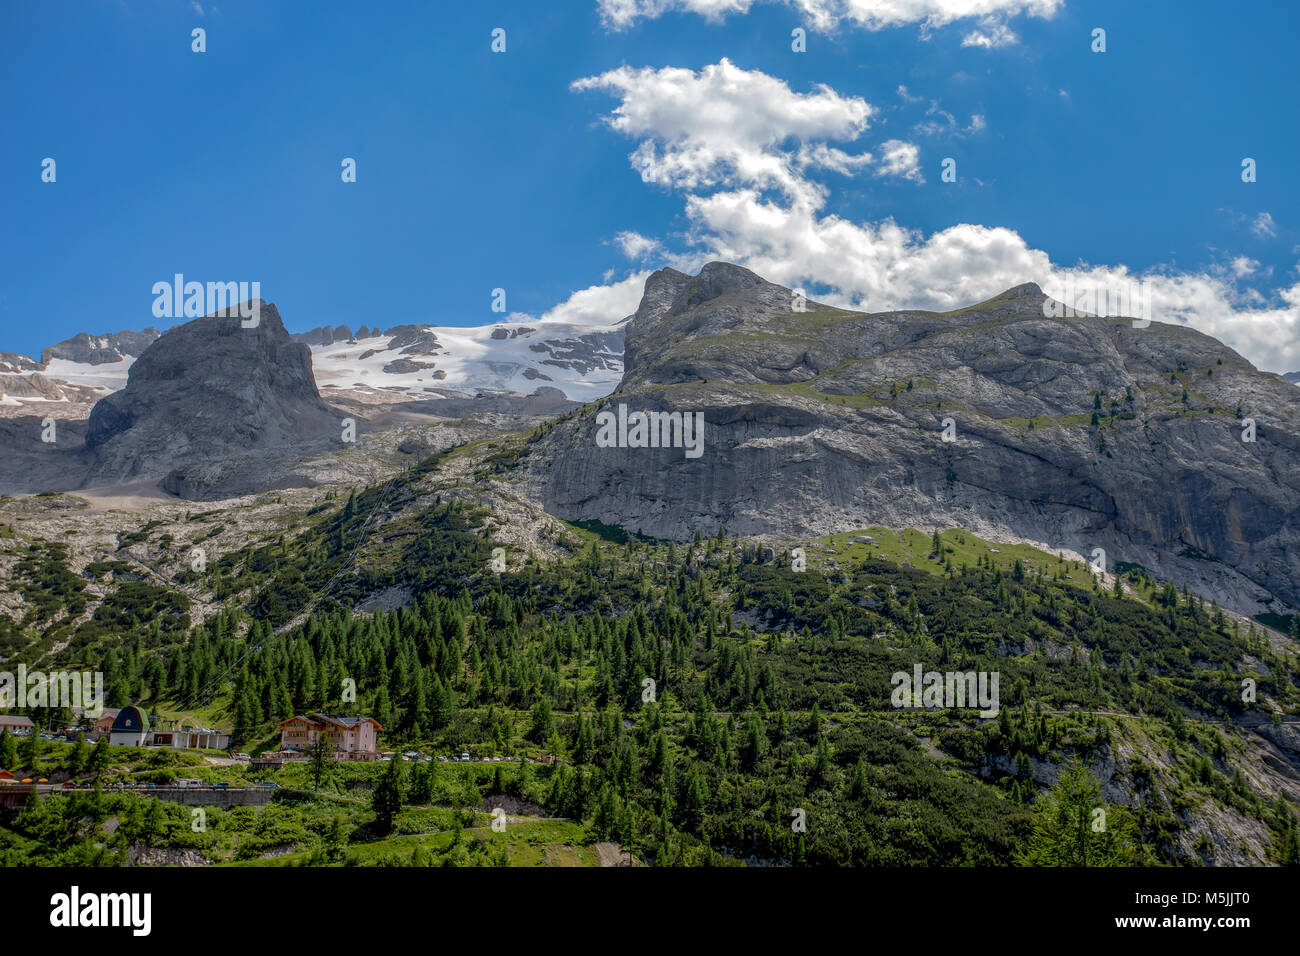 Views of Marmolada mountain massif, the highest mountain in the Dolomites group, Italy/ mountain/ snow/ peak/ rock Stock Photo